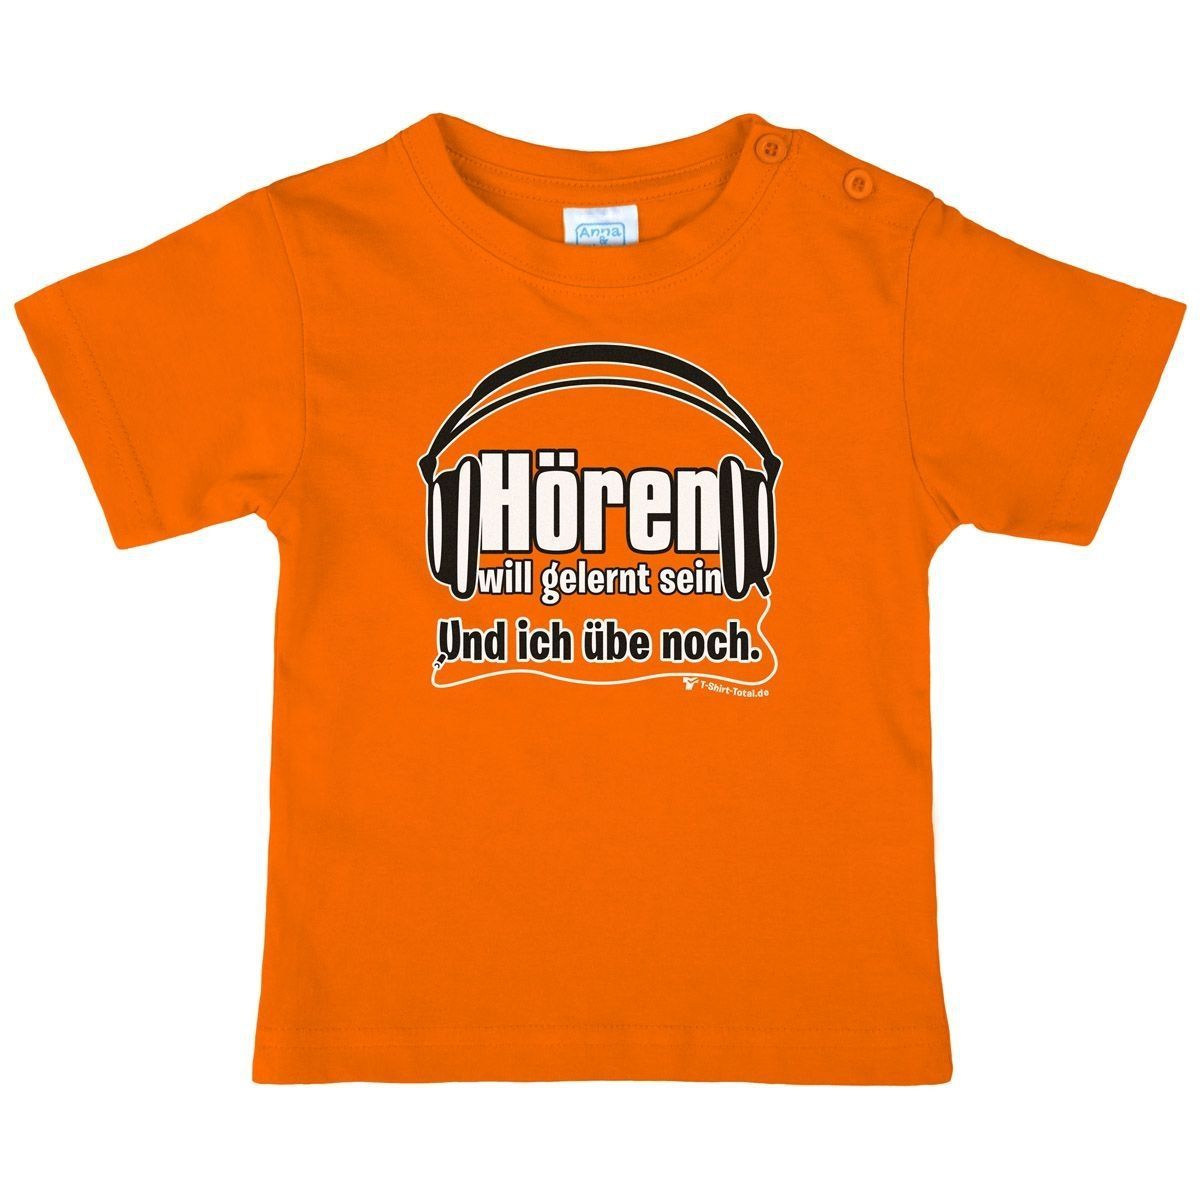 Hören will gelernt sein Kinder T-Shirt orange 104